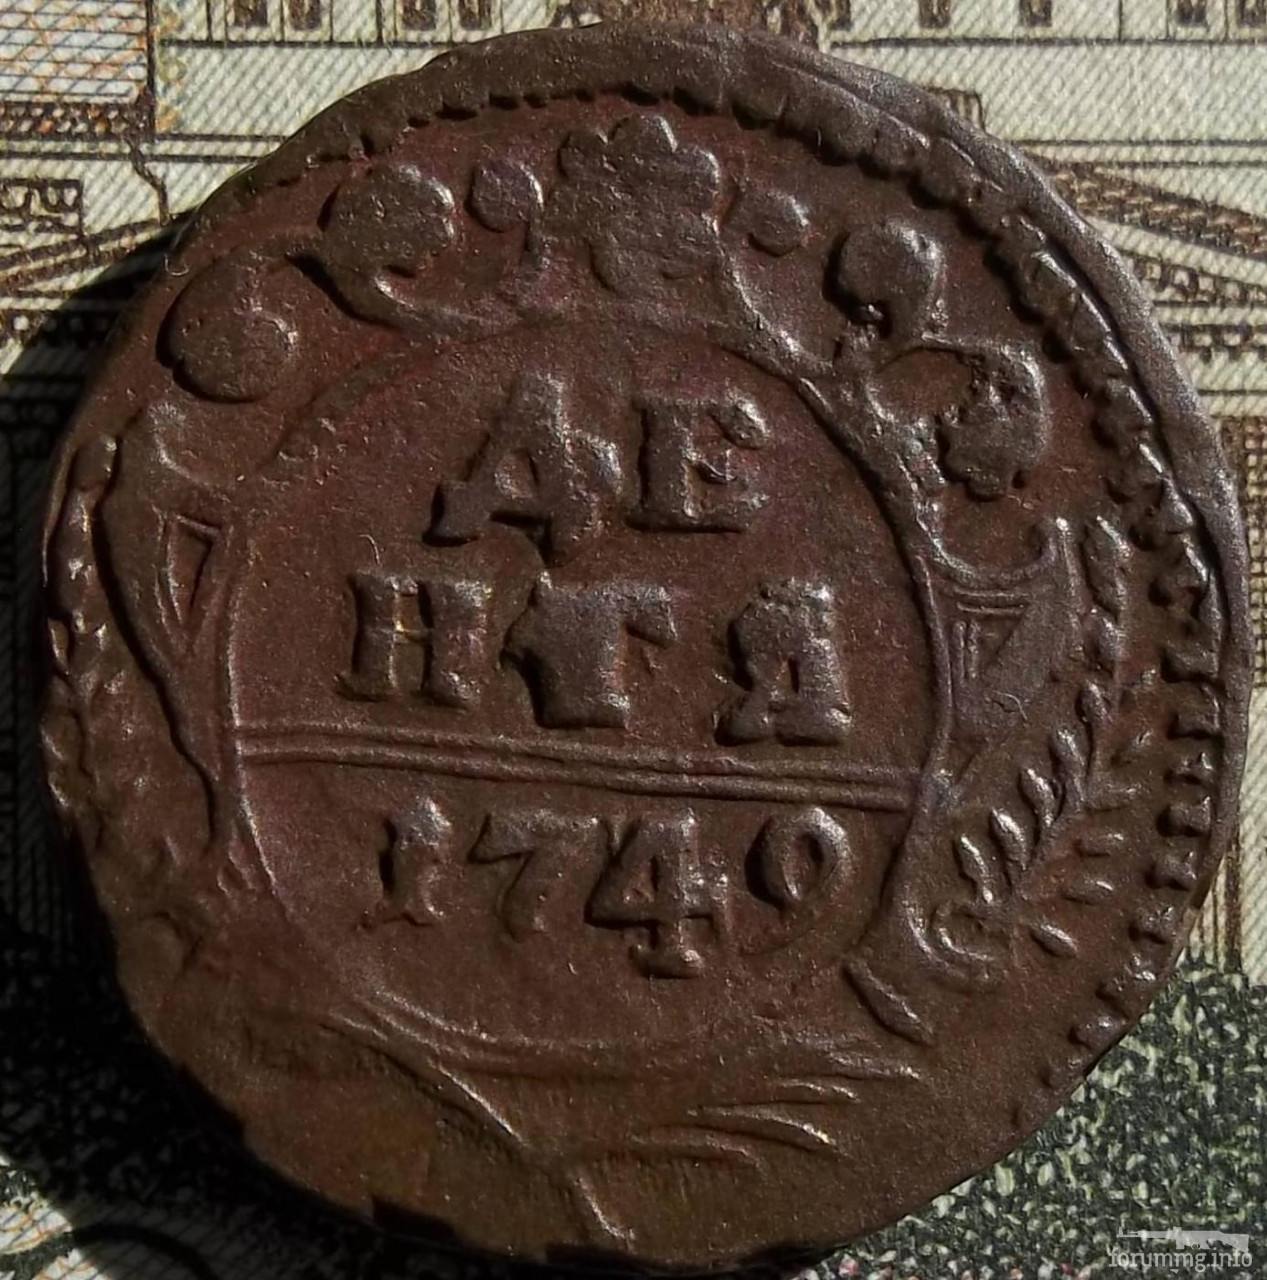 157409 - Интересные проходы деньга-полушка 1730-54 гг. на аукционах.